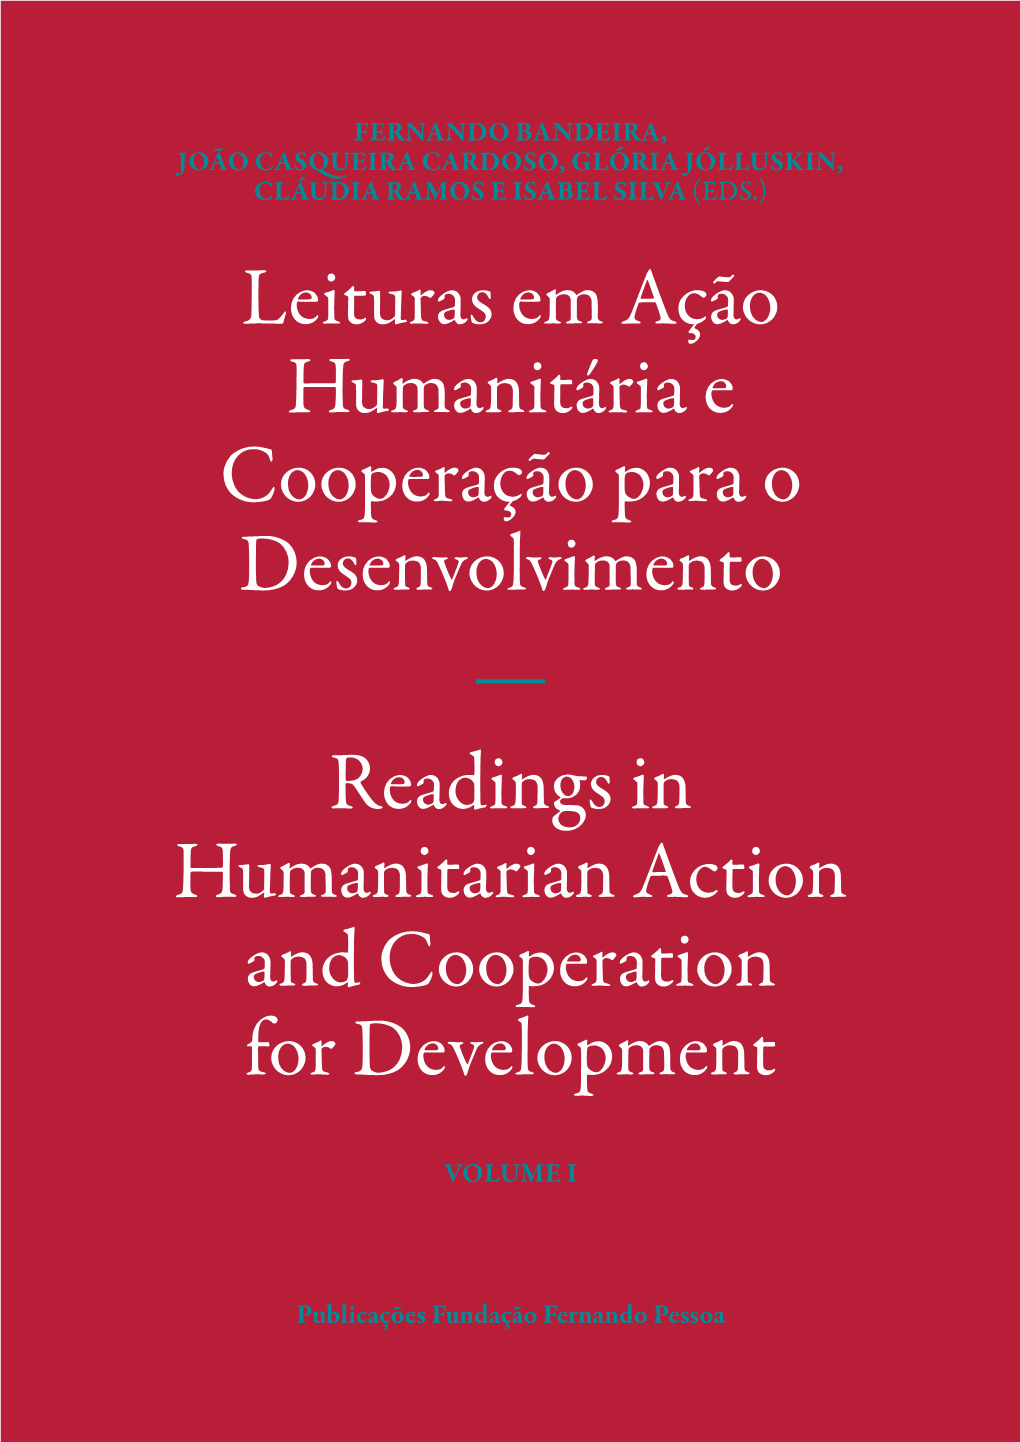 Leituras Em Ação Humanitária E Cooperação Para O Desenvolvimento — Readings in Humanitarian Action and Cooperation for Development